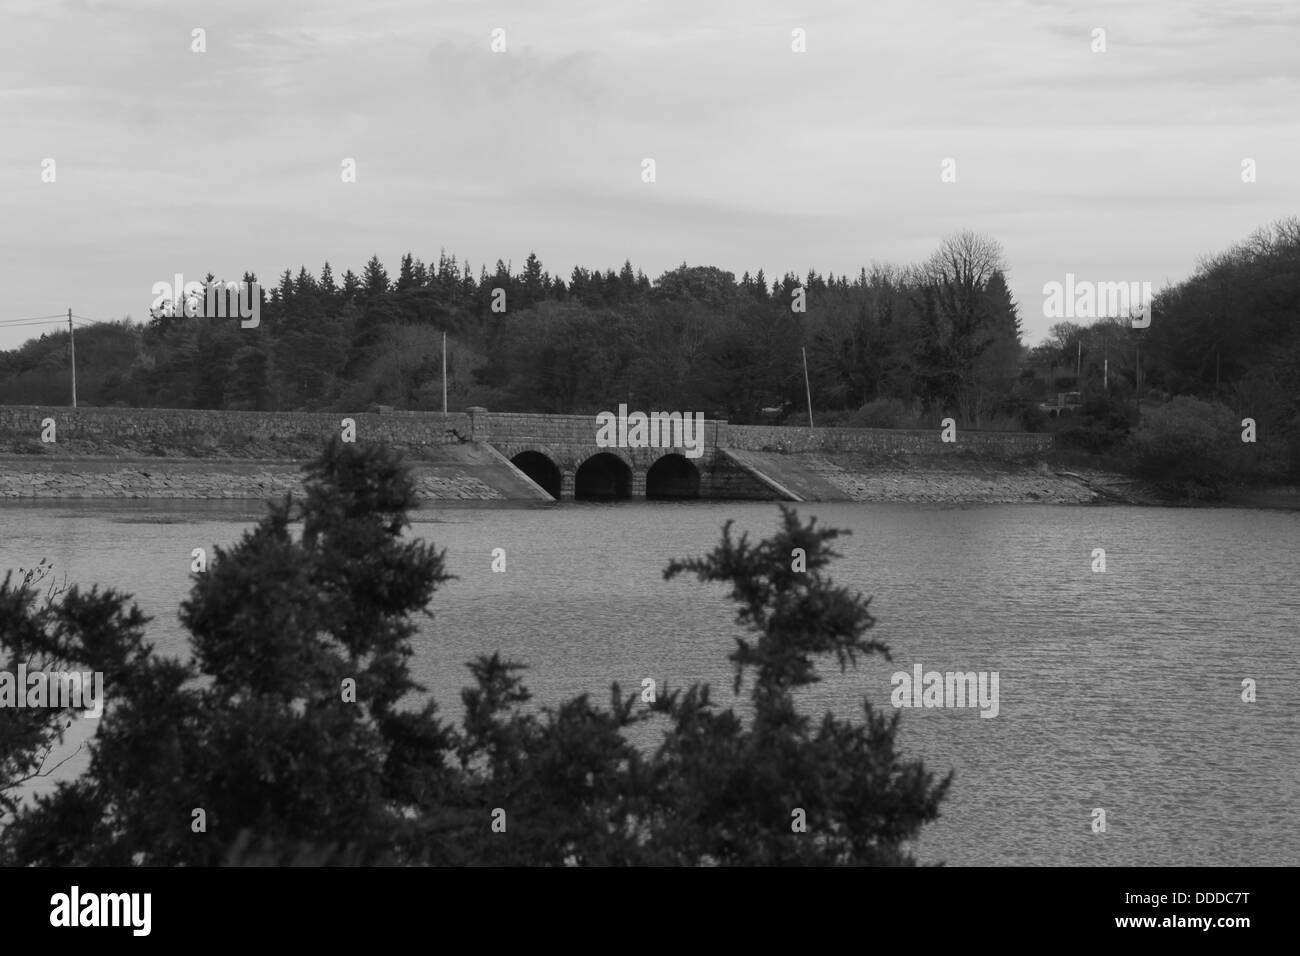 Vartry Reservoir, Wicklow, Ireland Stock Photo